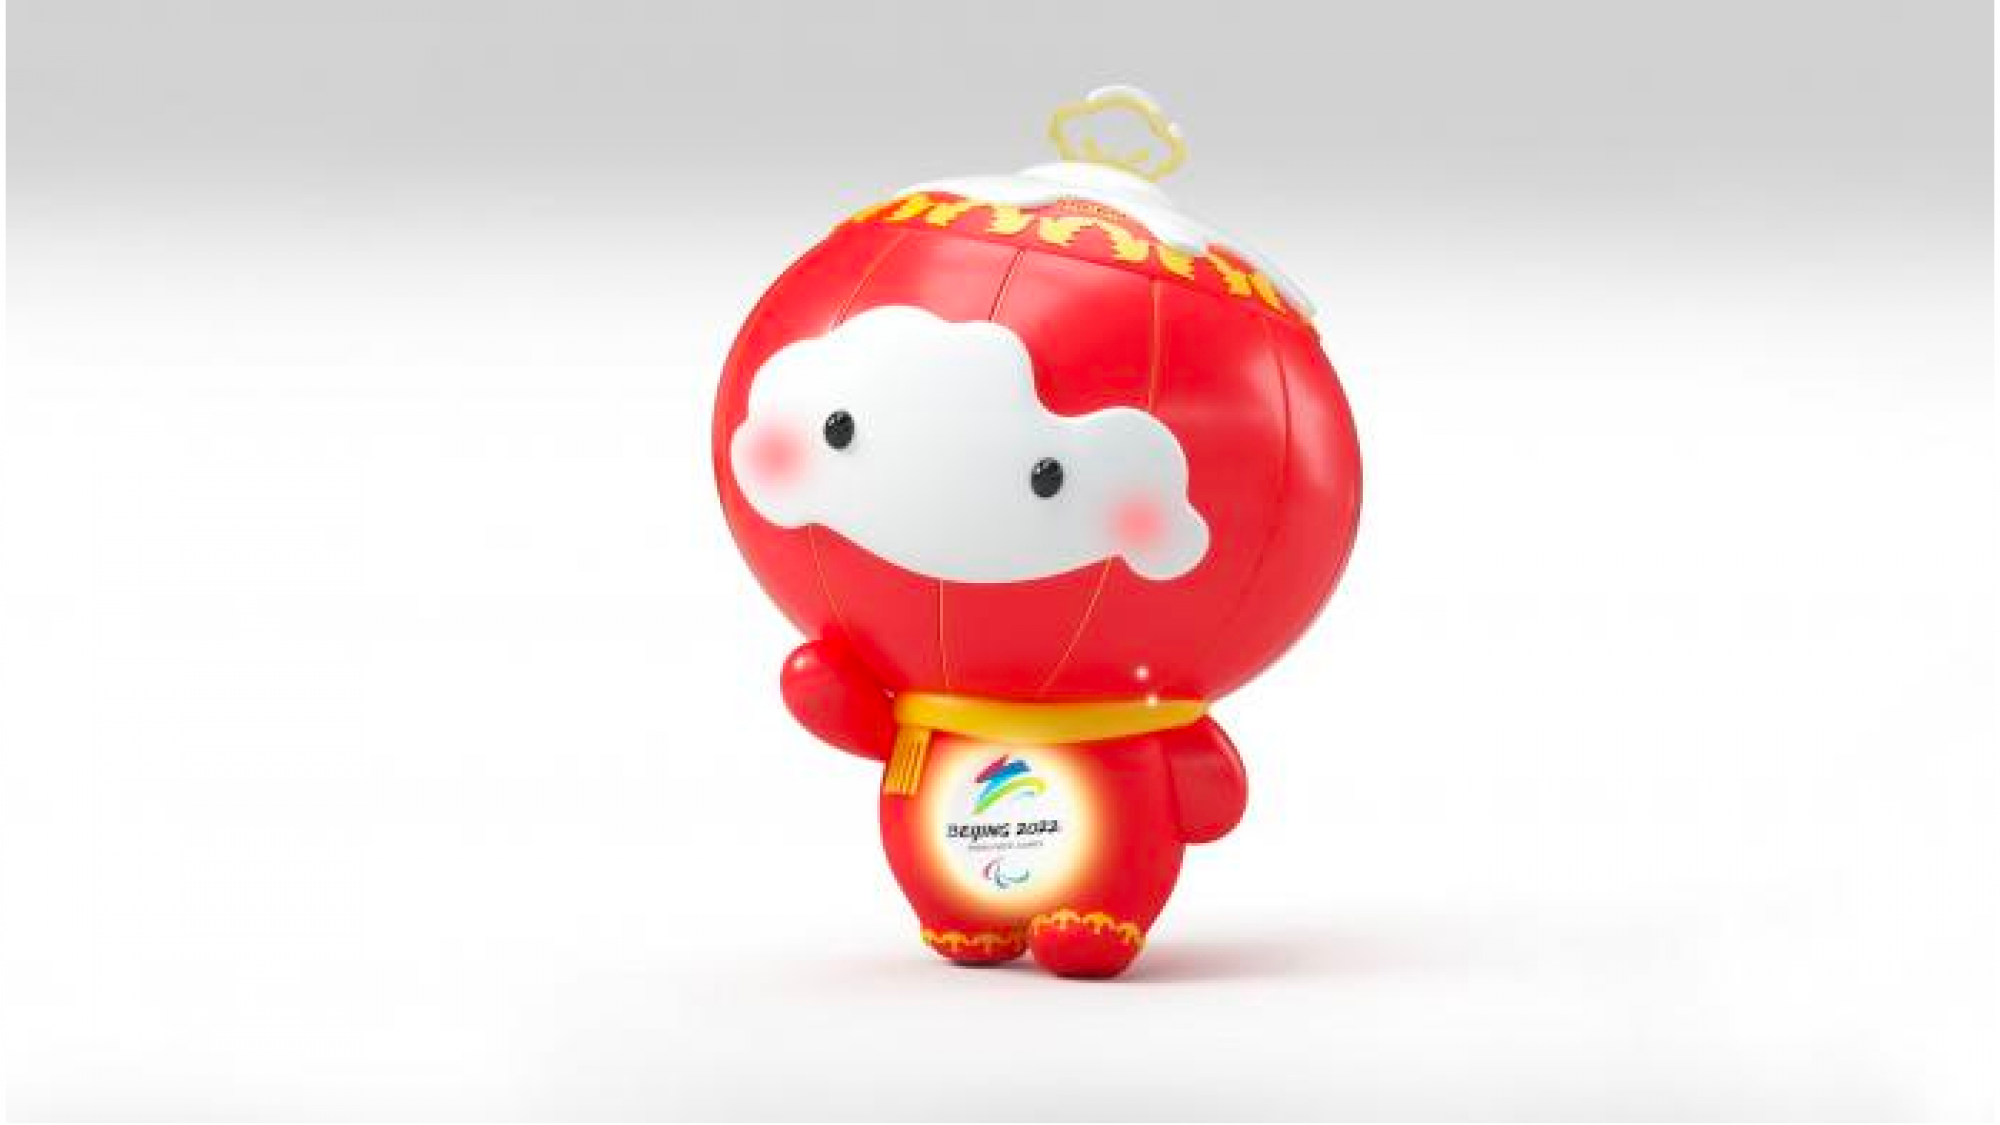 Shuey Rhon Rhon, Beijing 2022 mascot 